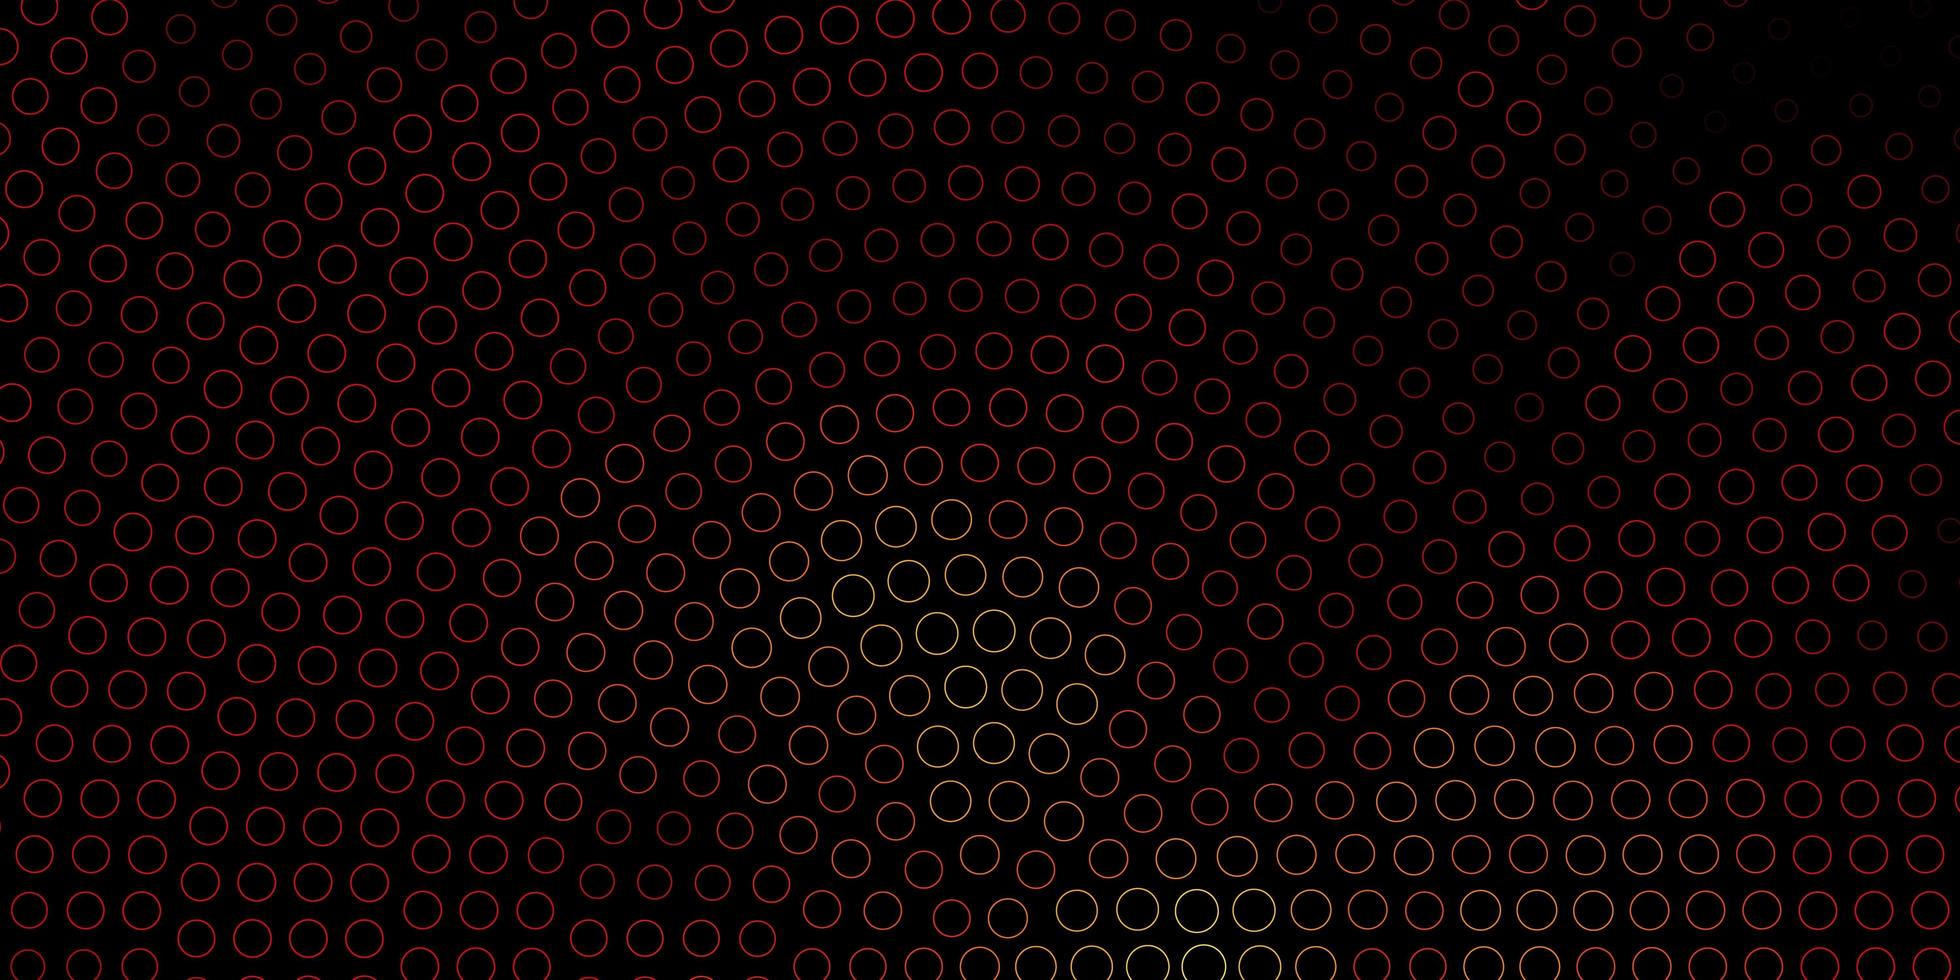 padrão de vetor laranja escuro com ilustração abstrata de esferas com manchas coloridas no padrão de estilo da natureza para folhetos de livretos